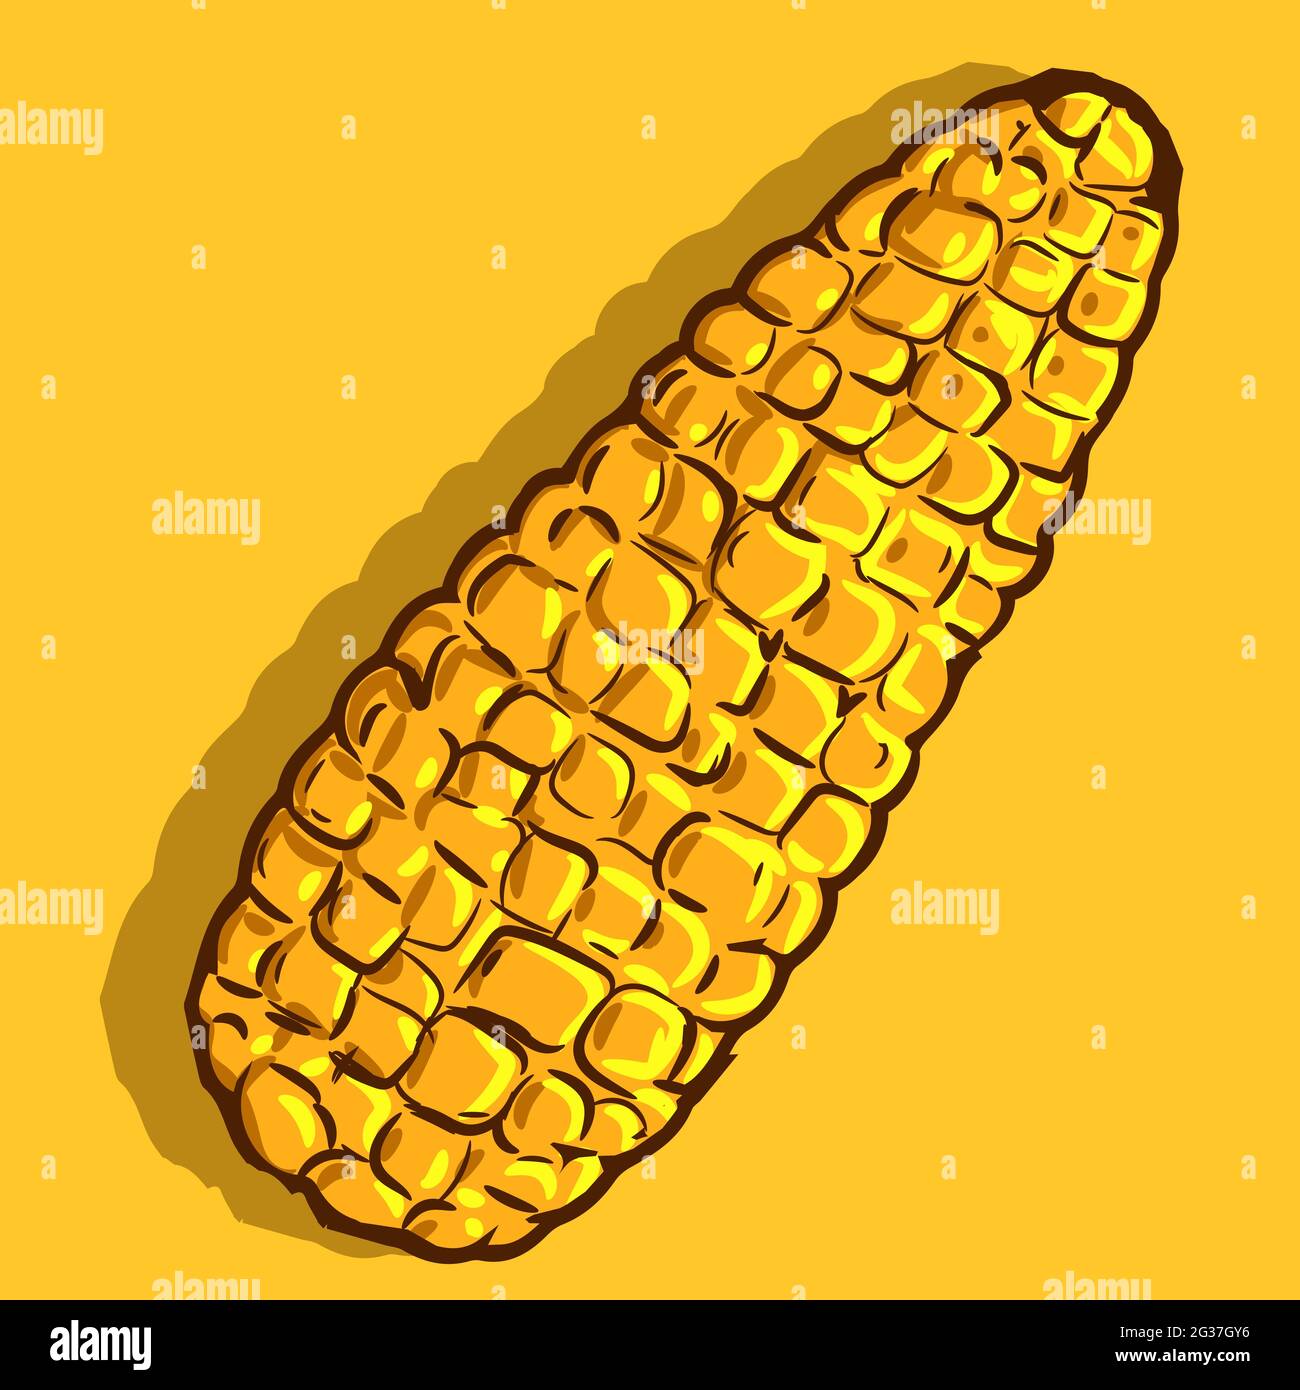 Illustration vectorielle d'un épis de maïs mûr jaune.Dessin d'une céréale isolée d'été et d'automne.dessin animé de nourriture saine illustration d'un cornB. Illustration de Vecteur